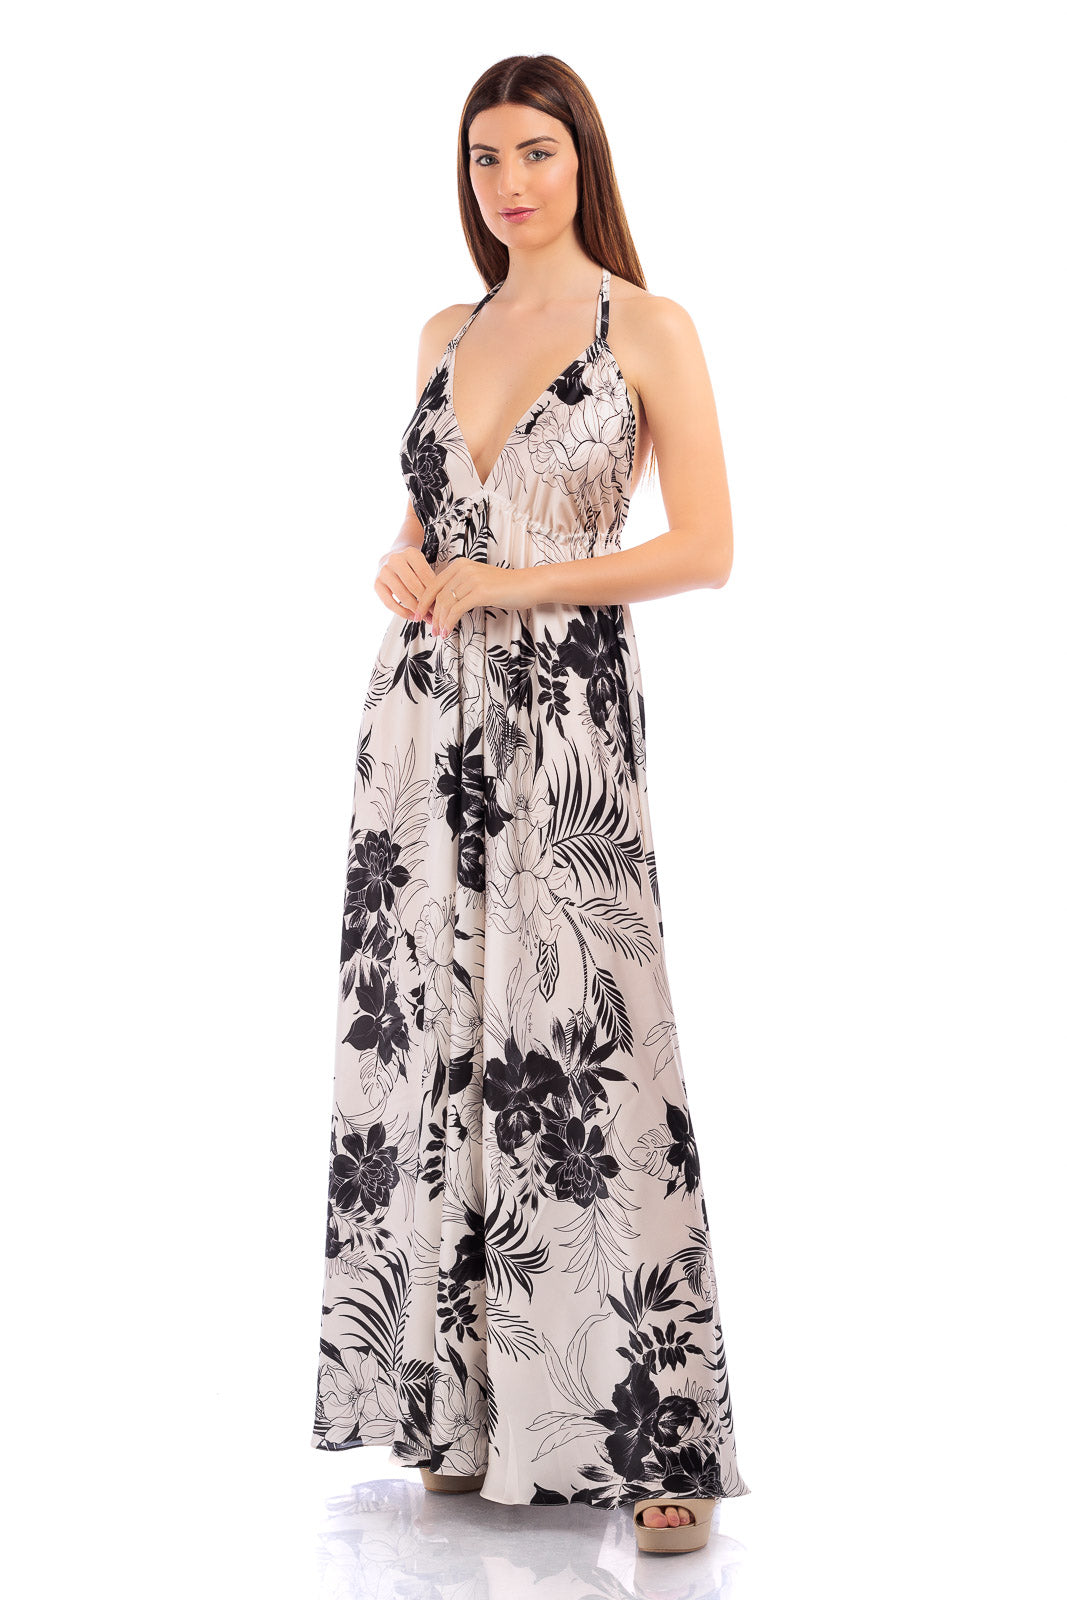 ARGO Cassia Silk Dress